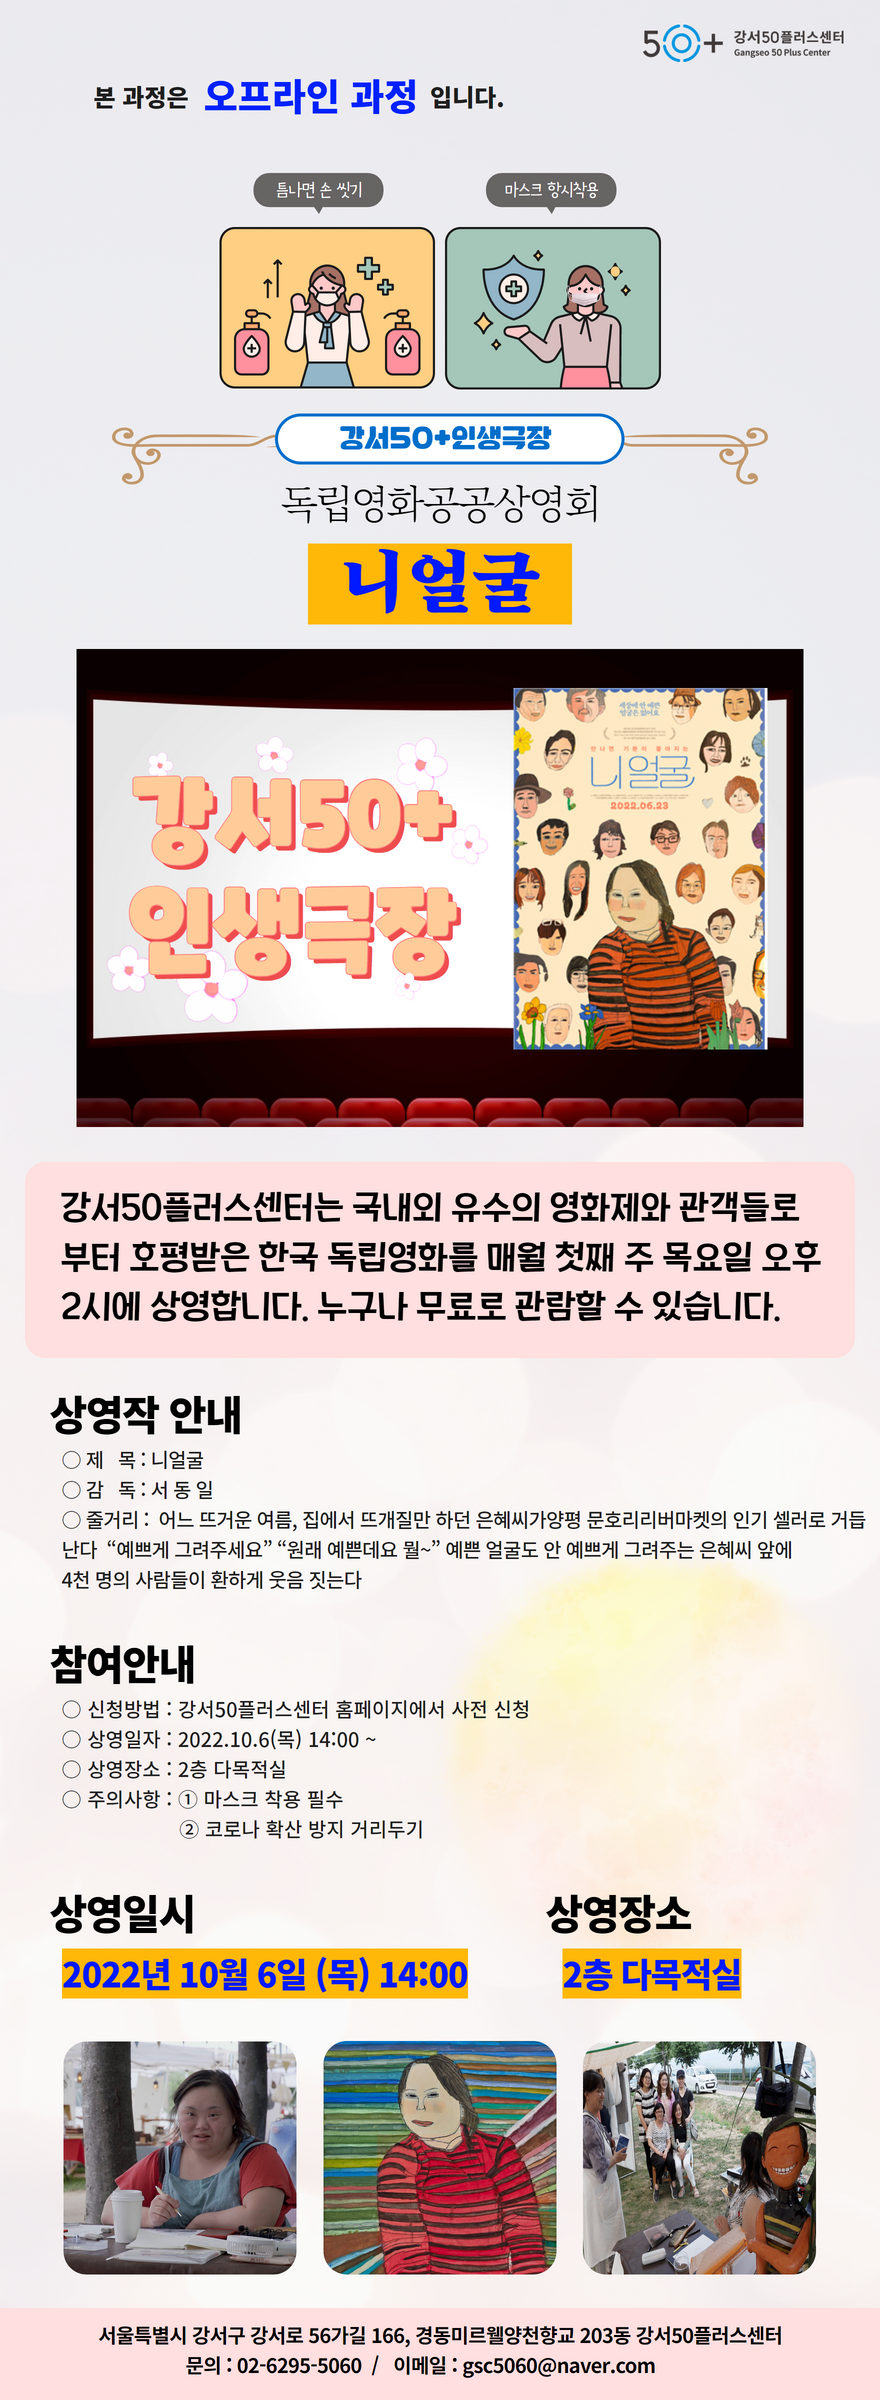 강서인생극장+_+니얼굴+(2).png